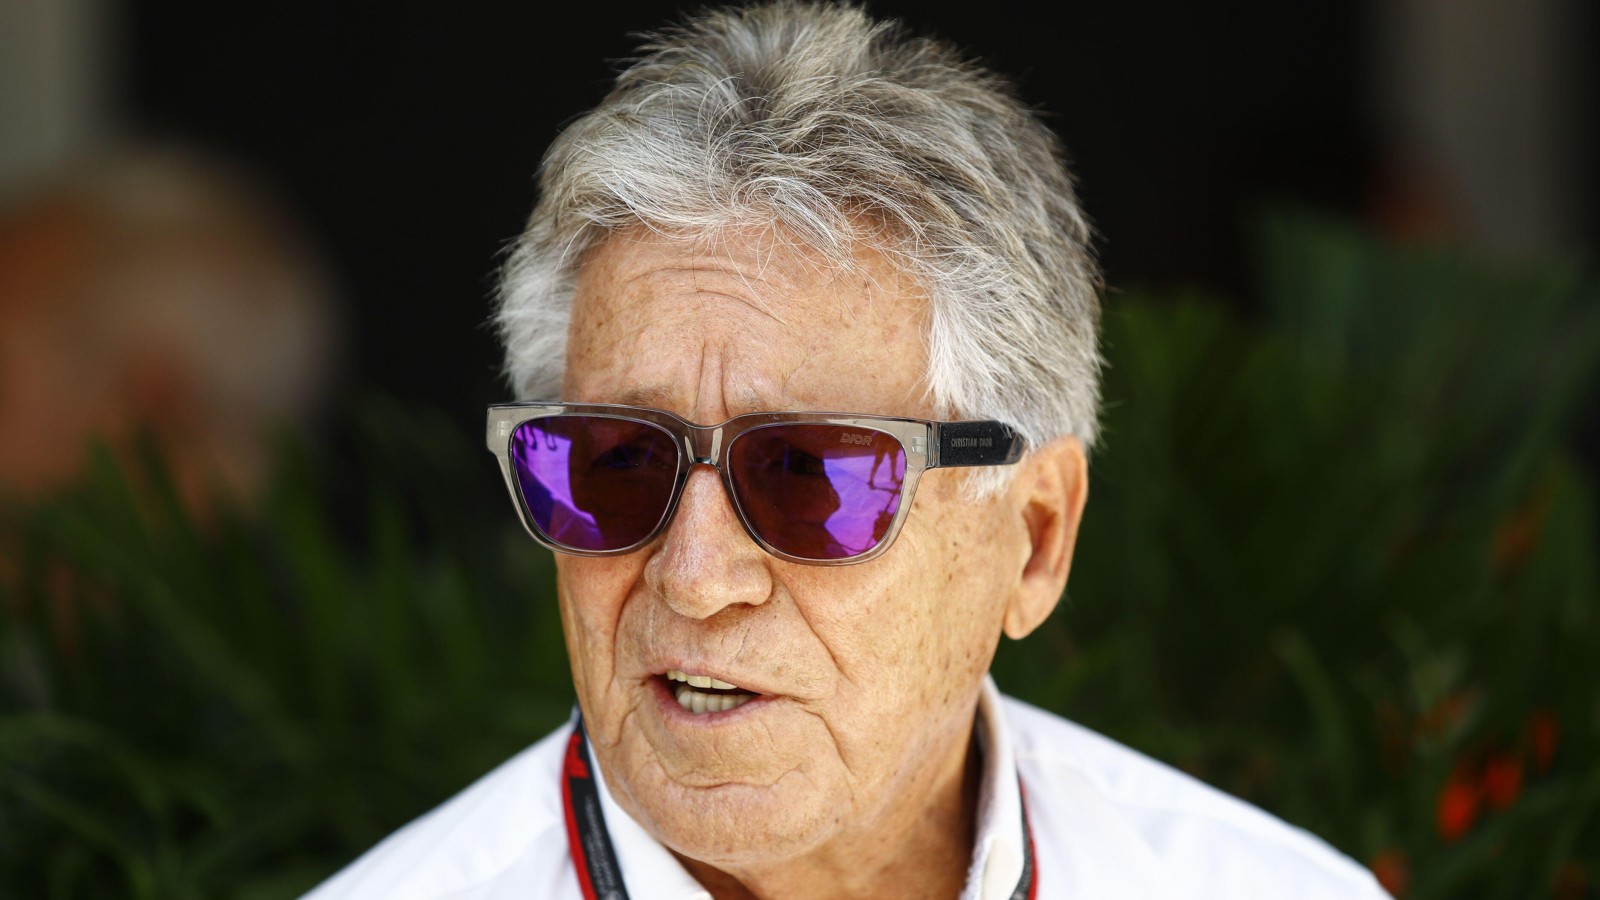 Mario Andretti wears sunglasses at the Miami Grand Prix. United States, May 2022.